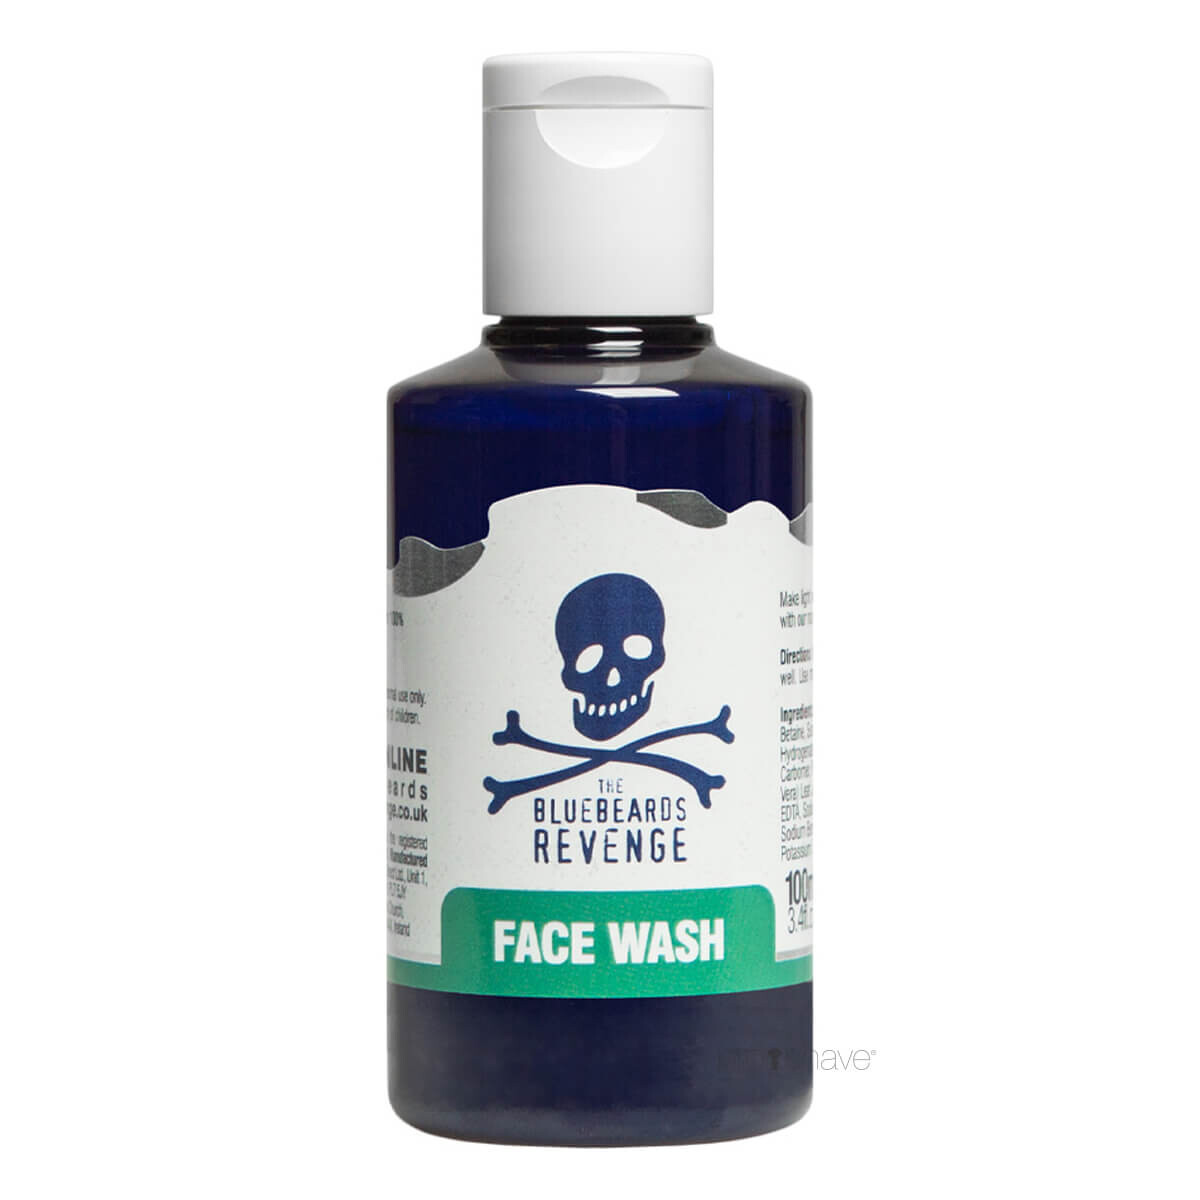 Billede af Bluebeards Revenge Face Wash, 100 ml.